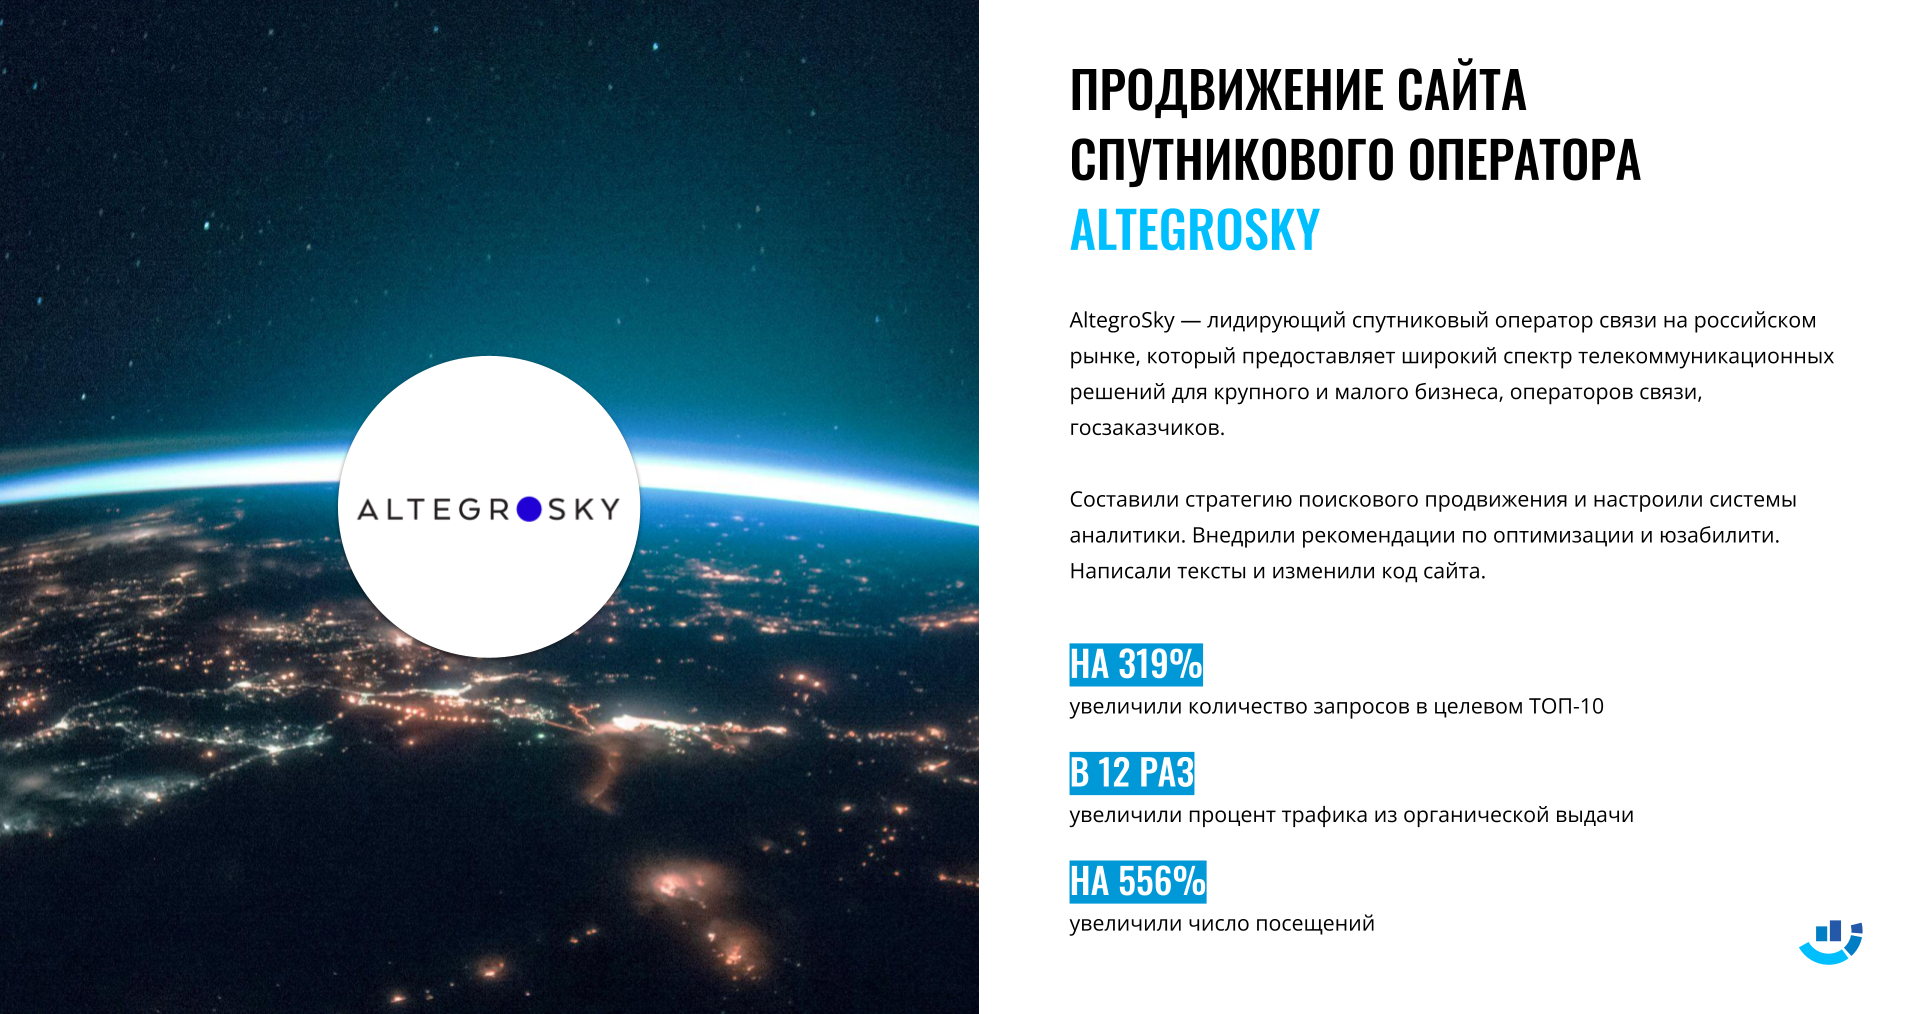 [Кейс] Космос и спутники. Продвижение сайта компании спутниковой связи Altegrosky